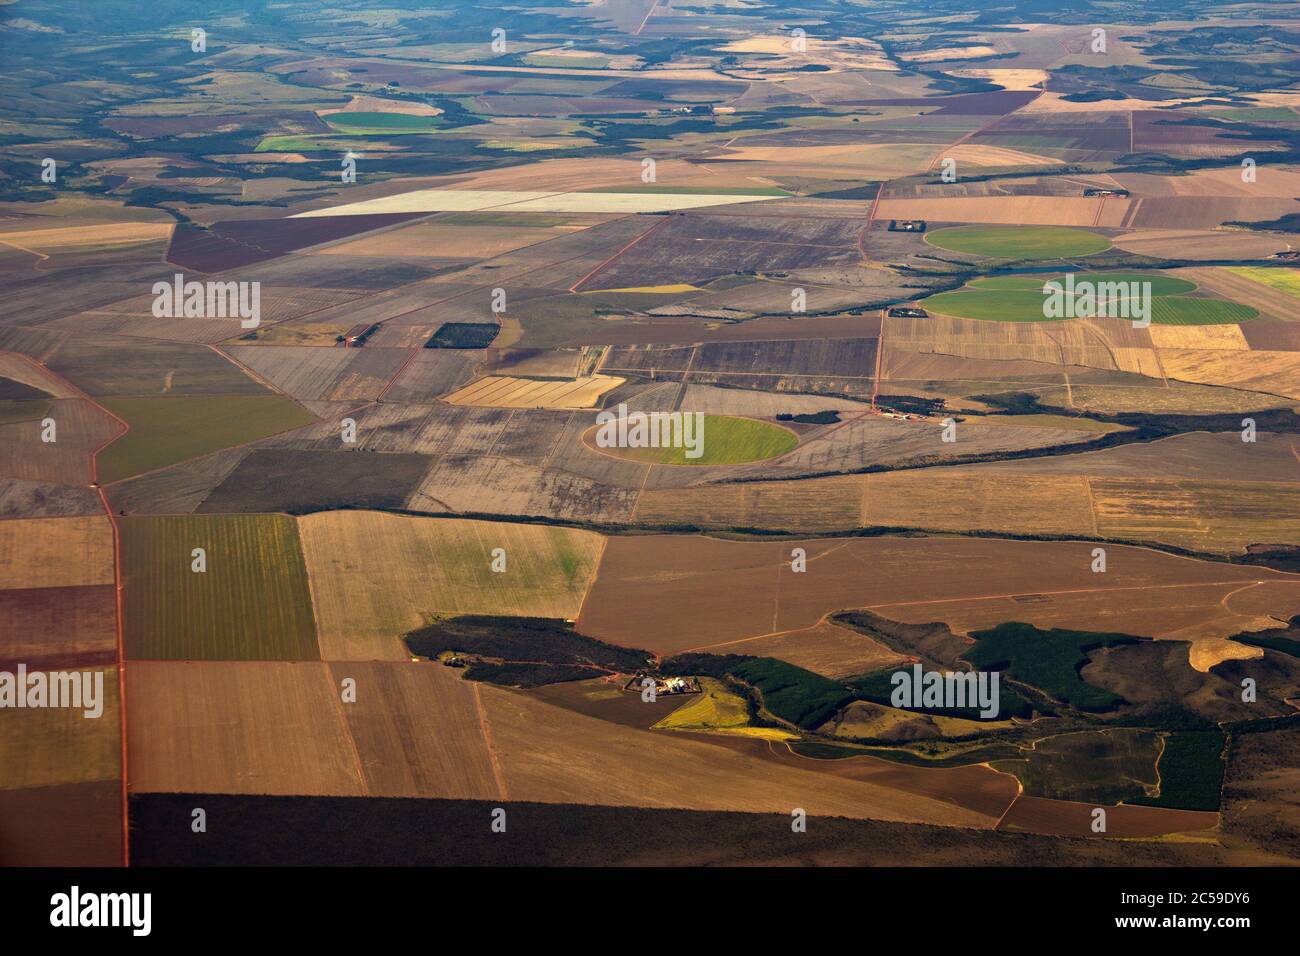 Vista aérea de campos cultivados en el cerrado de Goiás, Medio Oeste Brasileño (Centro-Oeste), corazón de la agroindustria brasileña Foto de stock